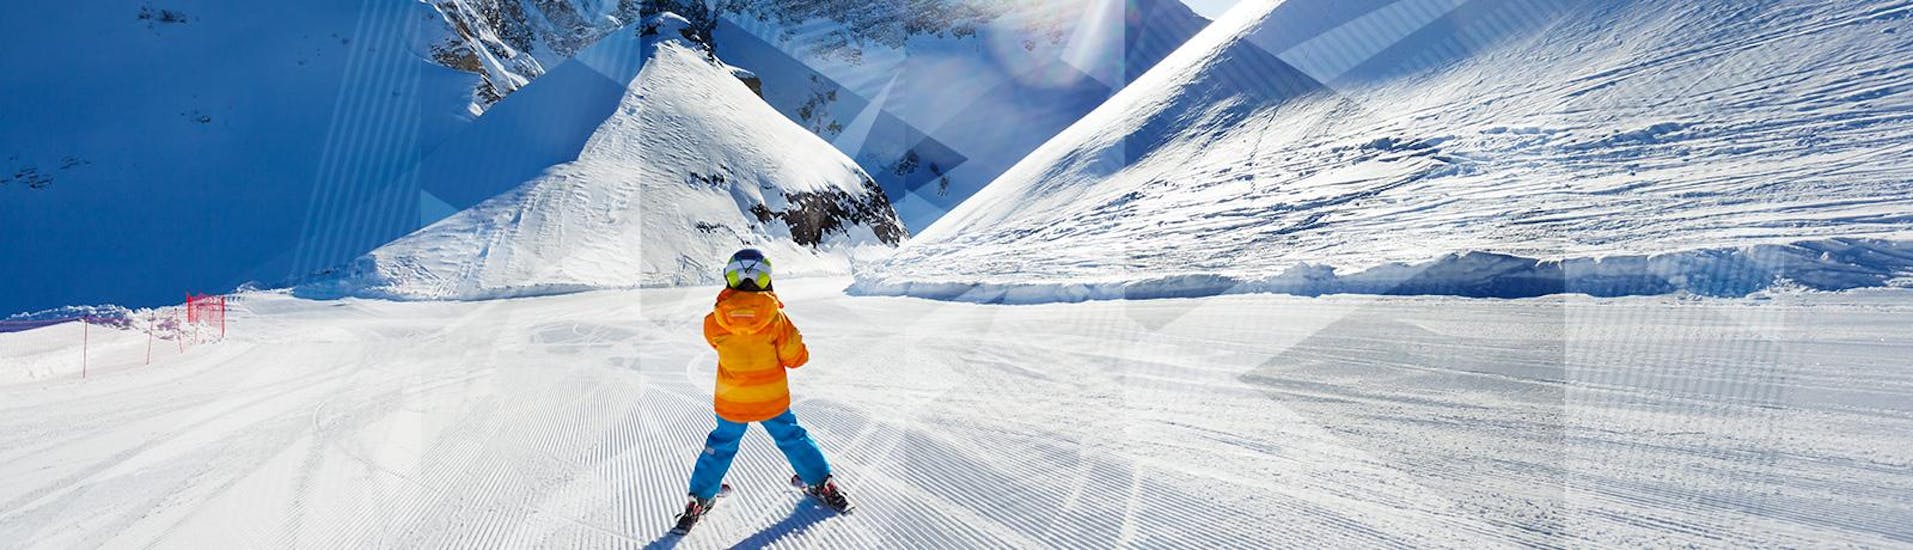 Un enfant s’amuse lors de son Cours particulier de ski Enfants - Haute saison - Arc 2000 avec Evolution 2 - Arc 2000.